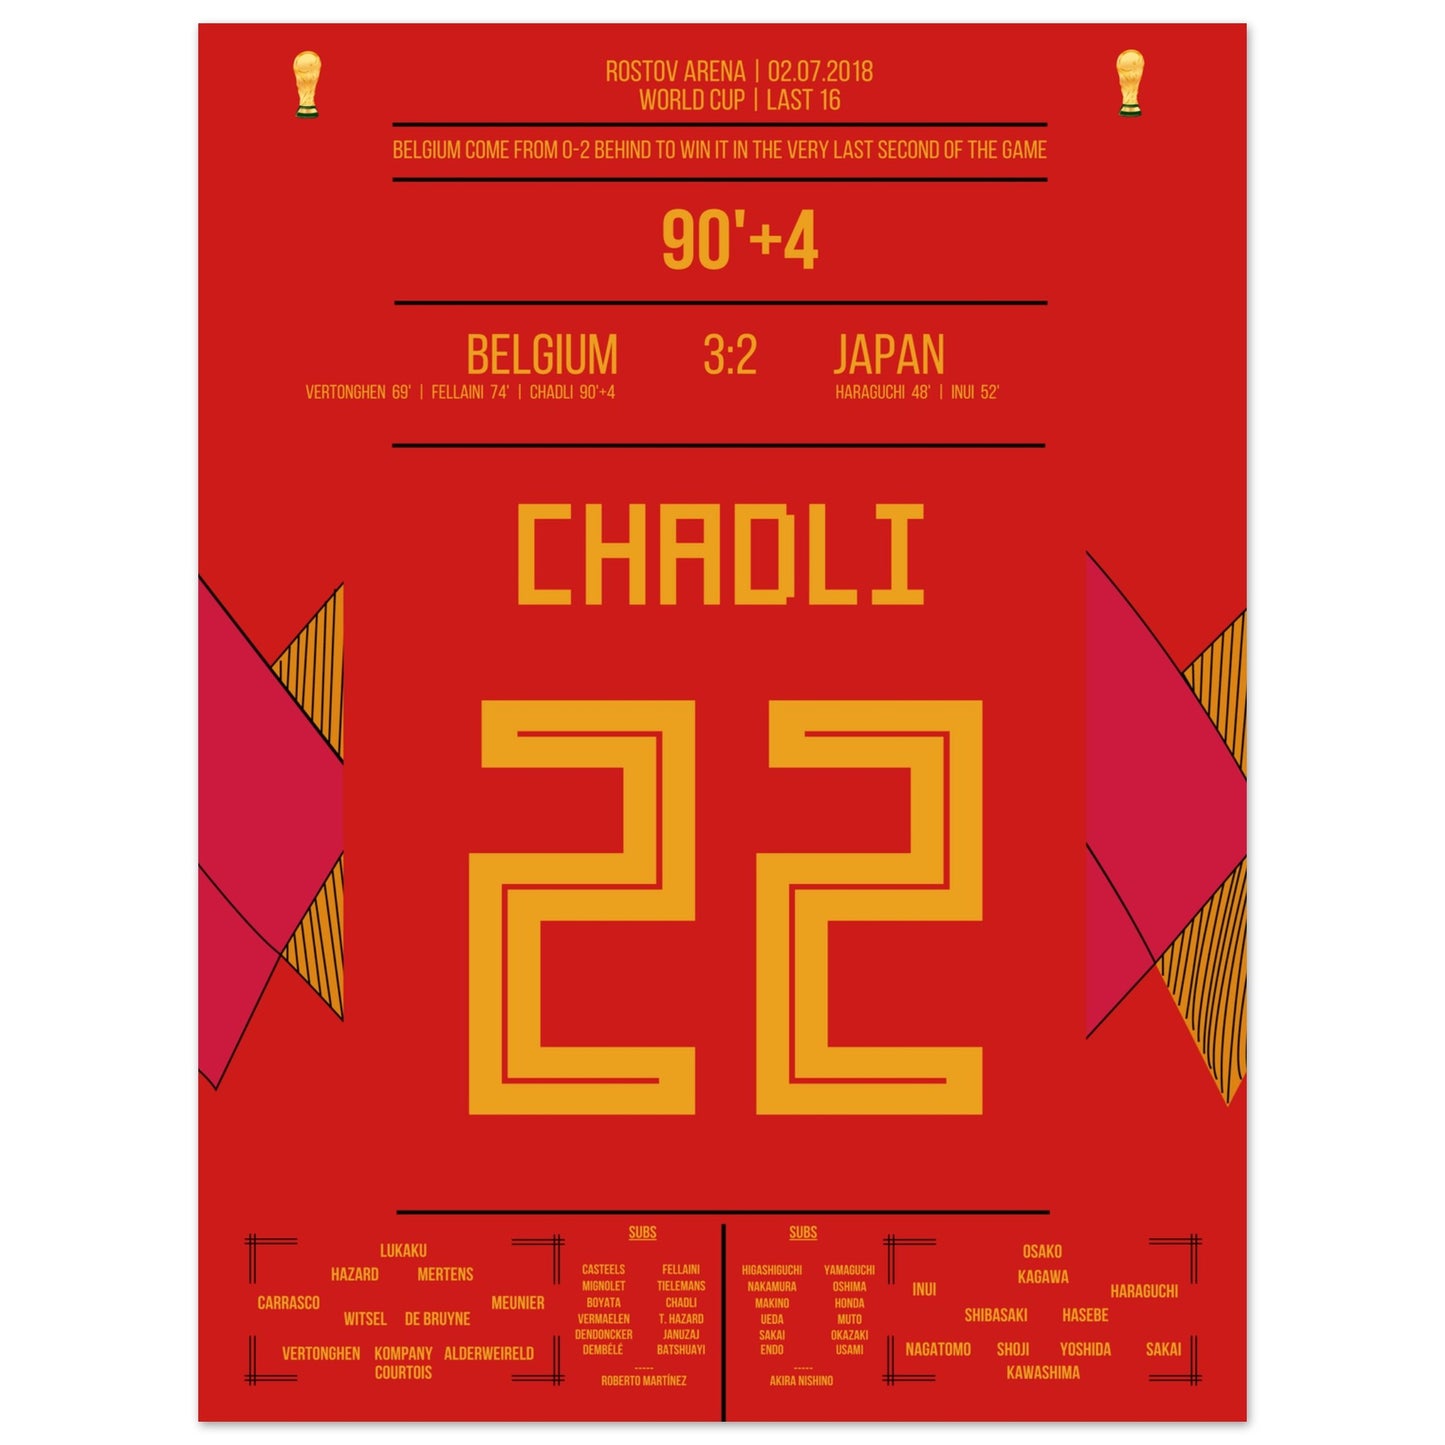 Chadli's Last-Minute Tor gegen Japan bei der WM 2018